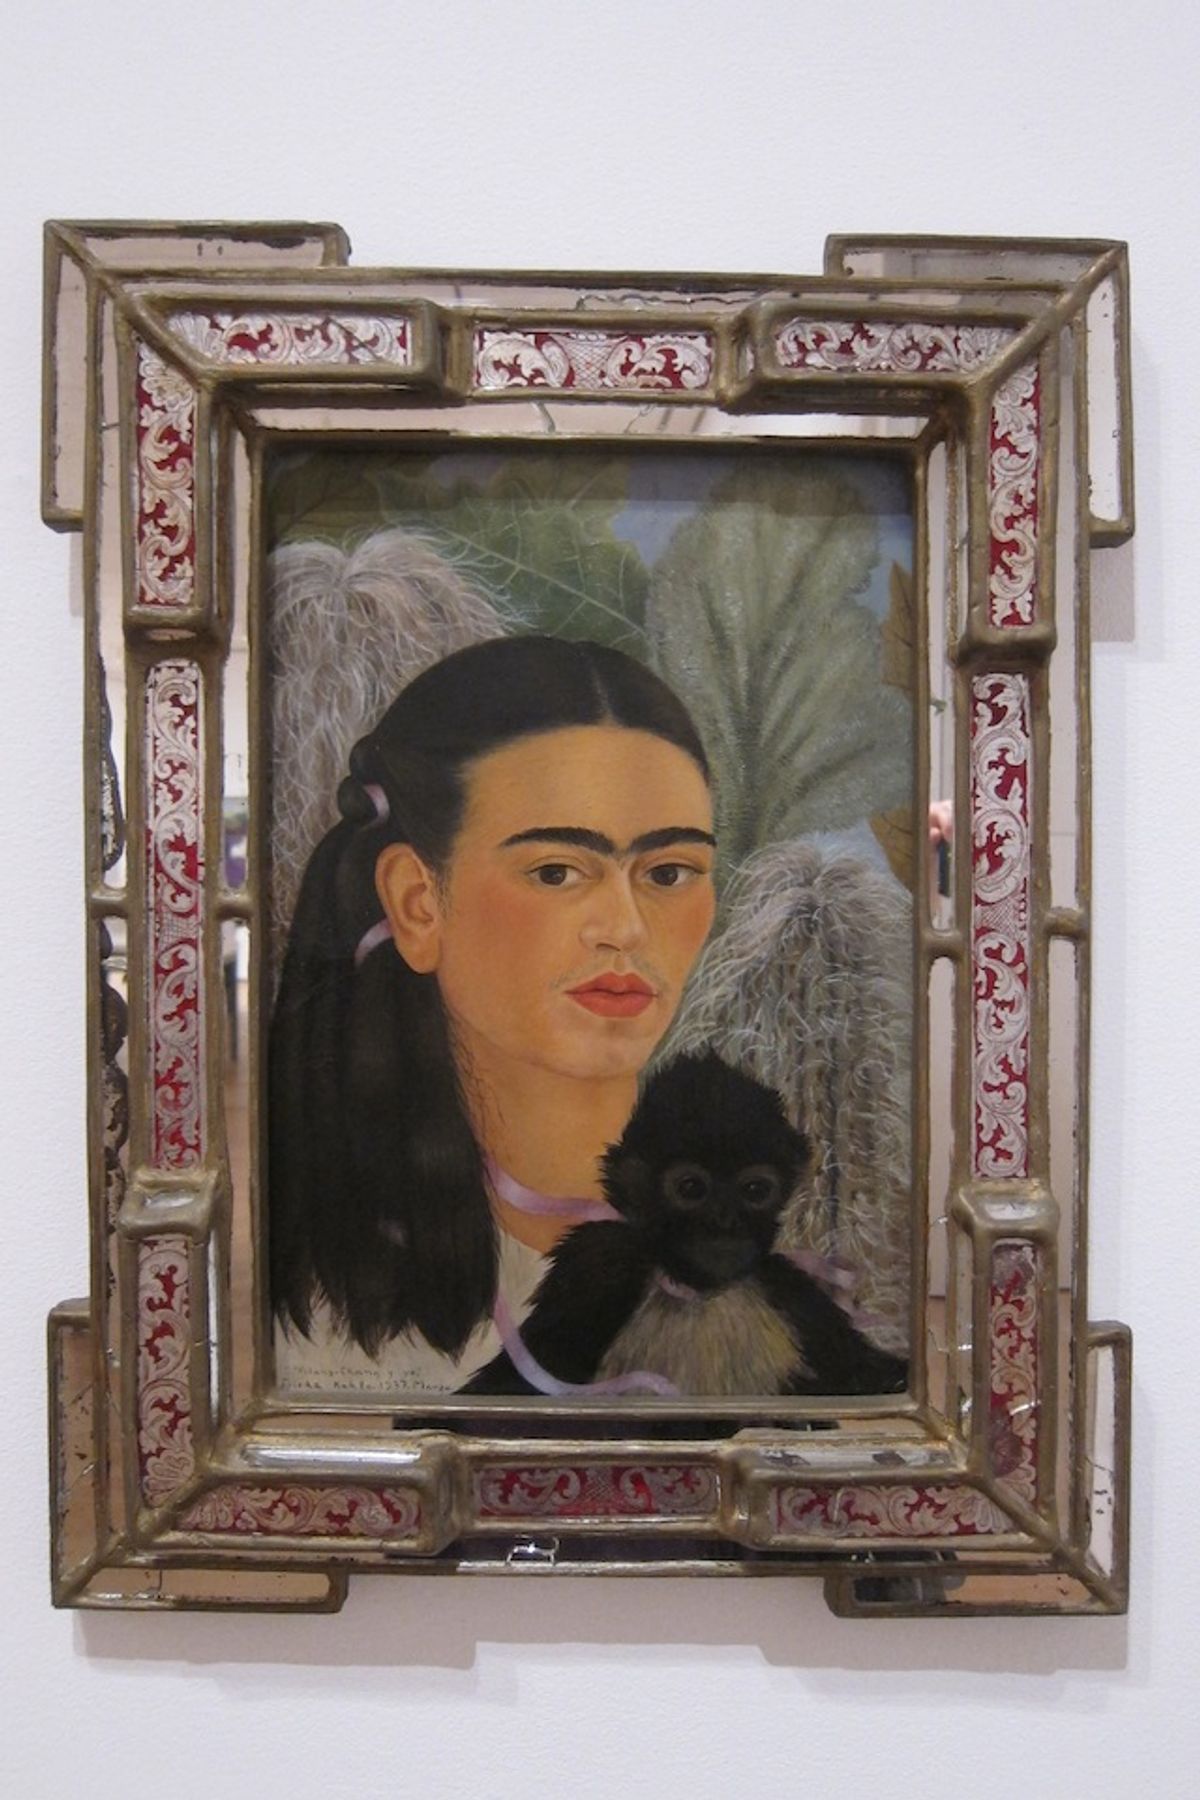  Frida Kahlo, “Fulang Chang and I,” (1937) (image via Flickr)